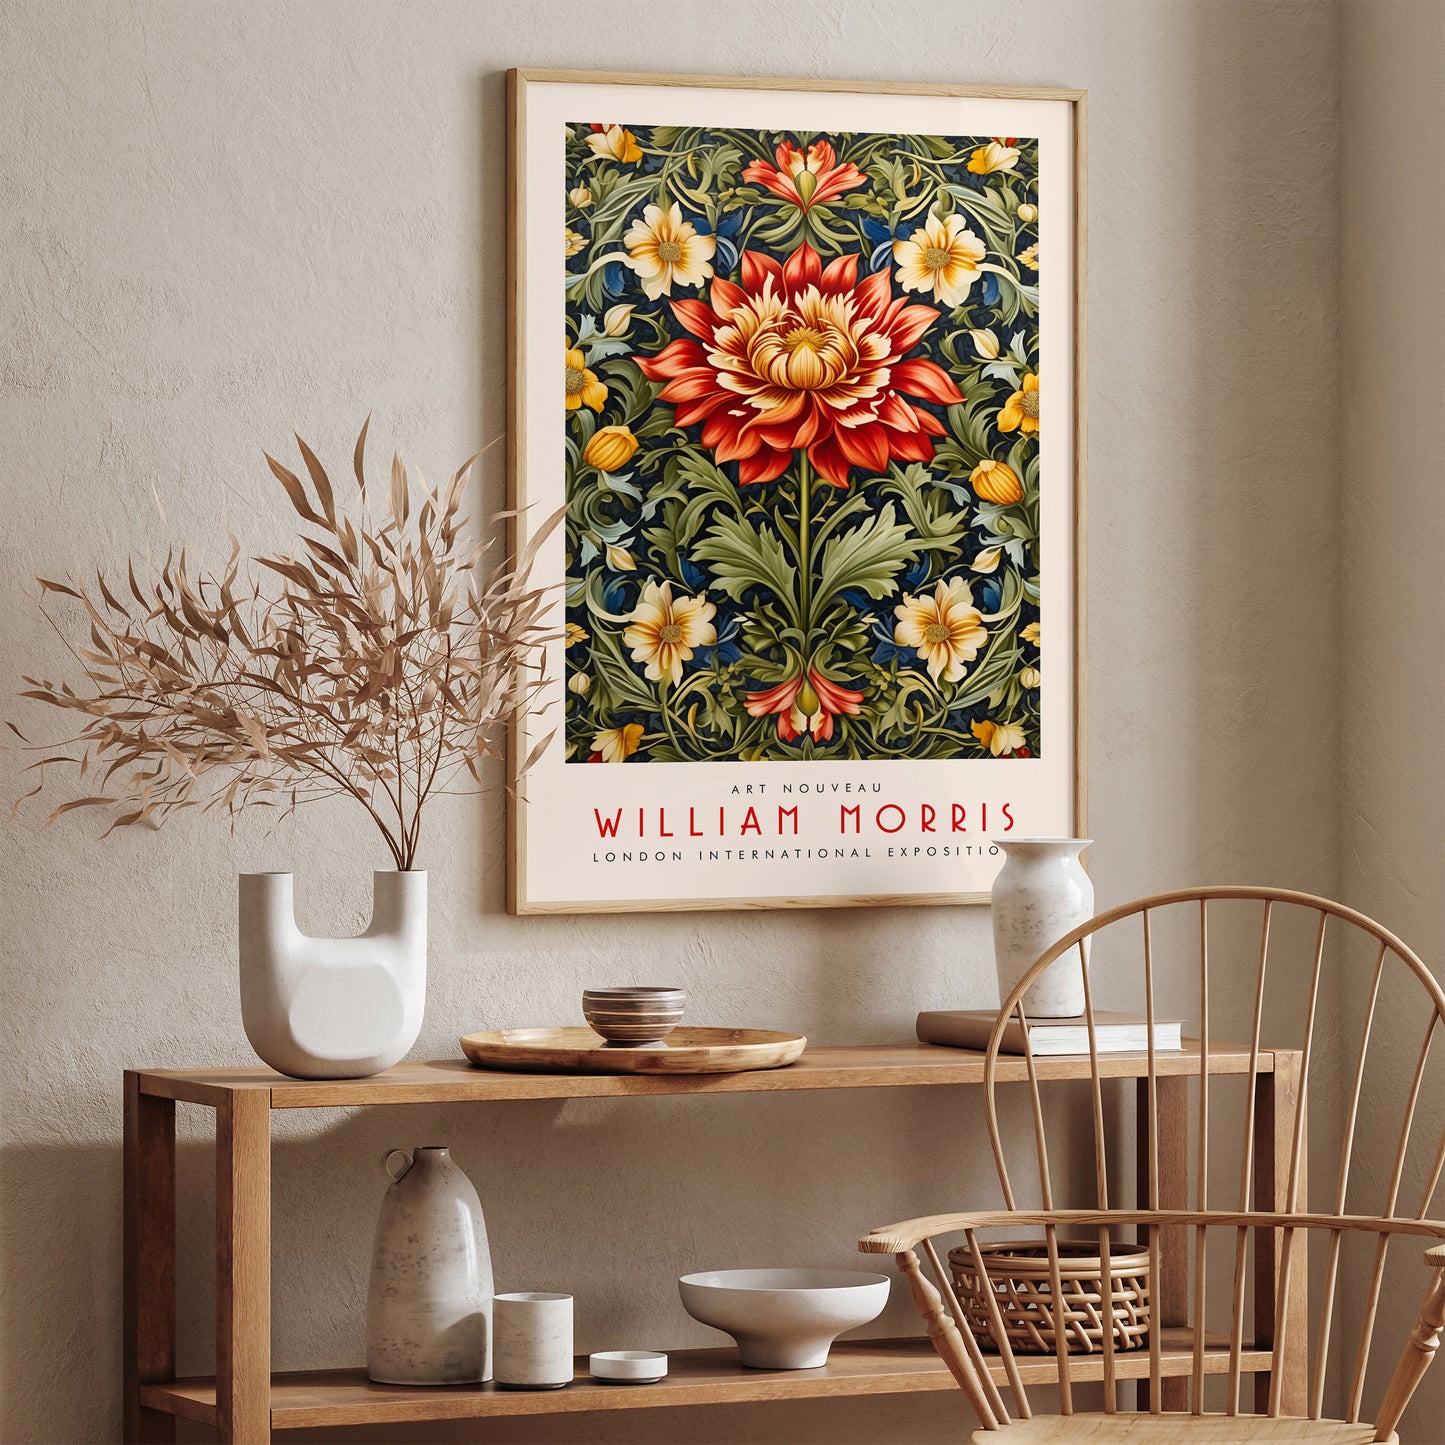 William Morris British Textile Art Poster